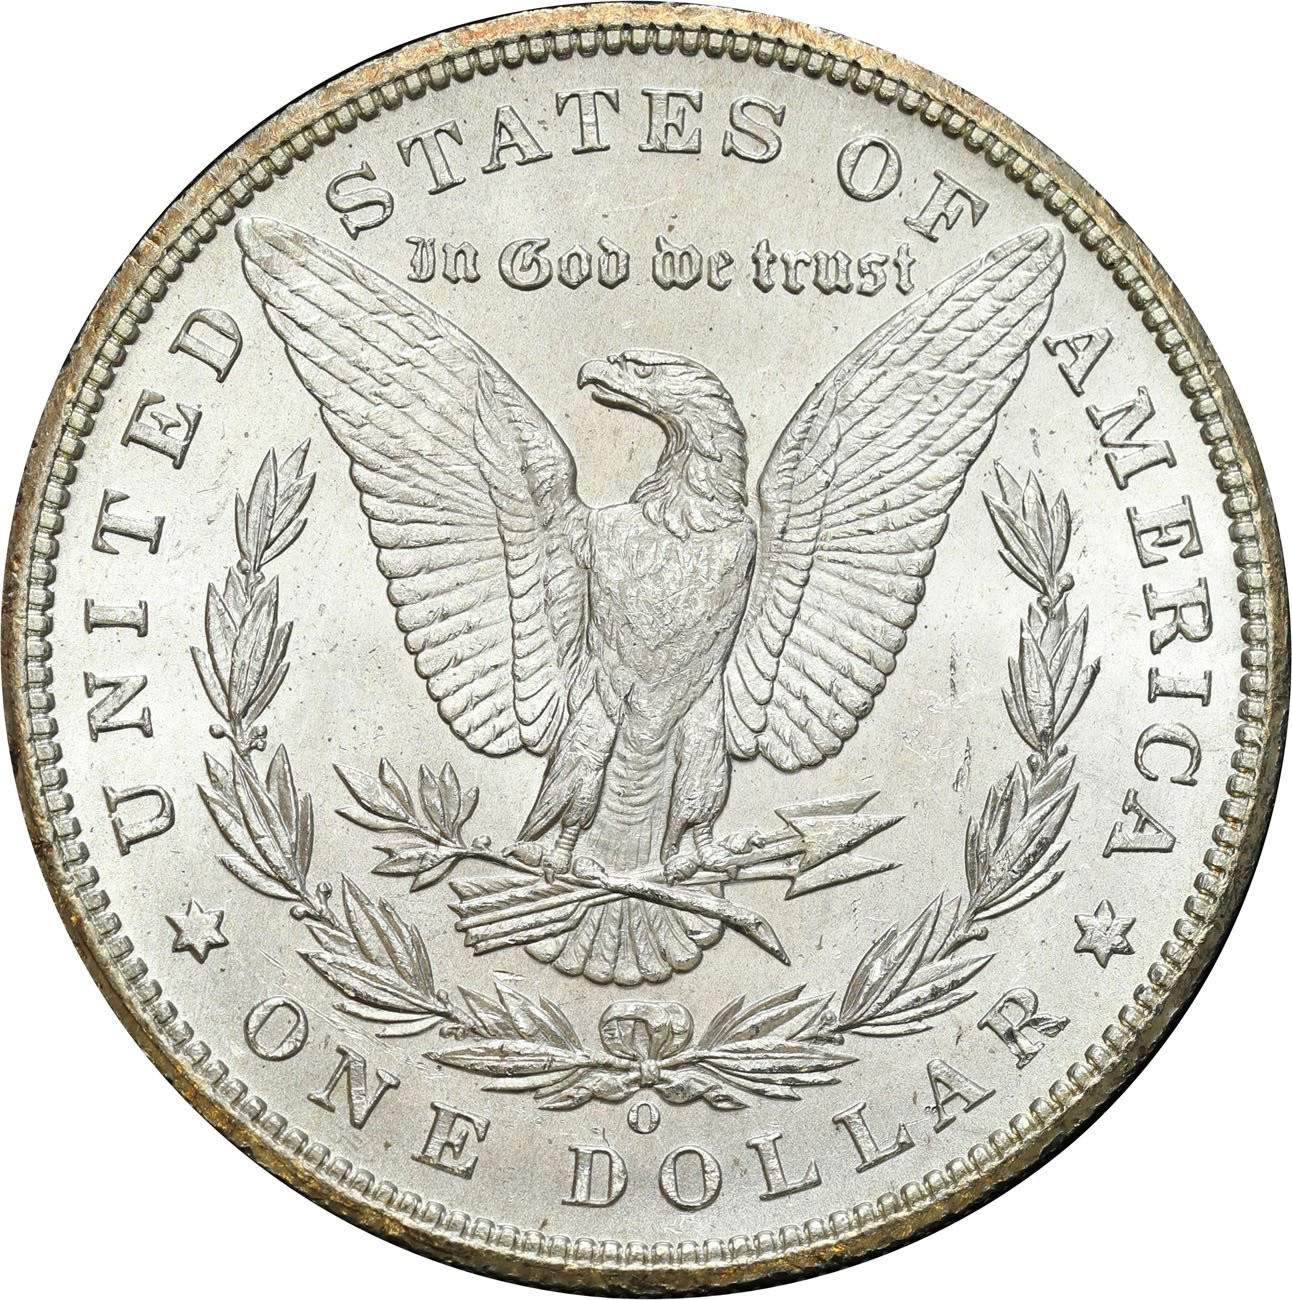 USA. Dolar 1899 O, New Orlean